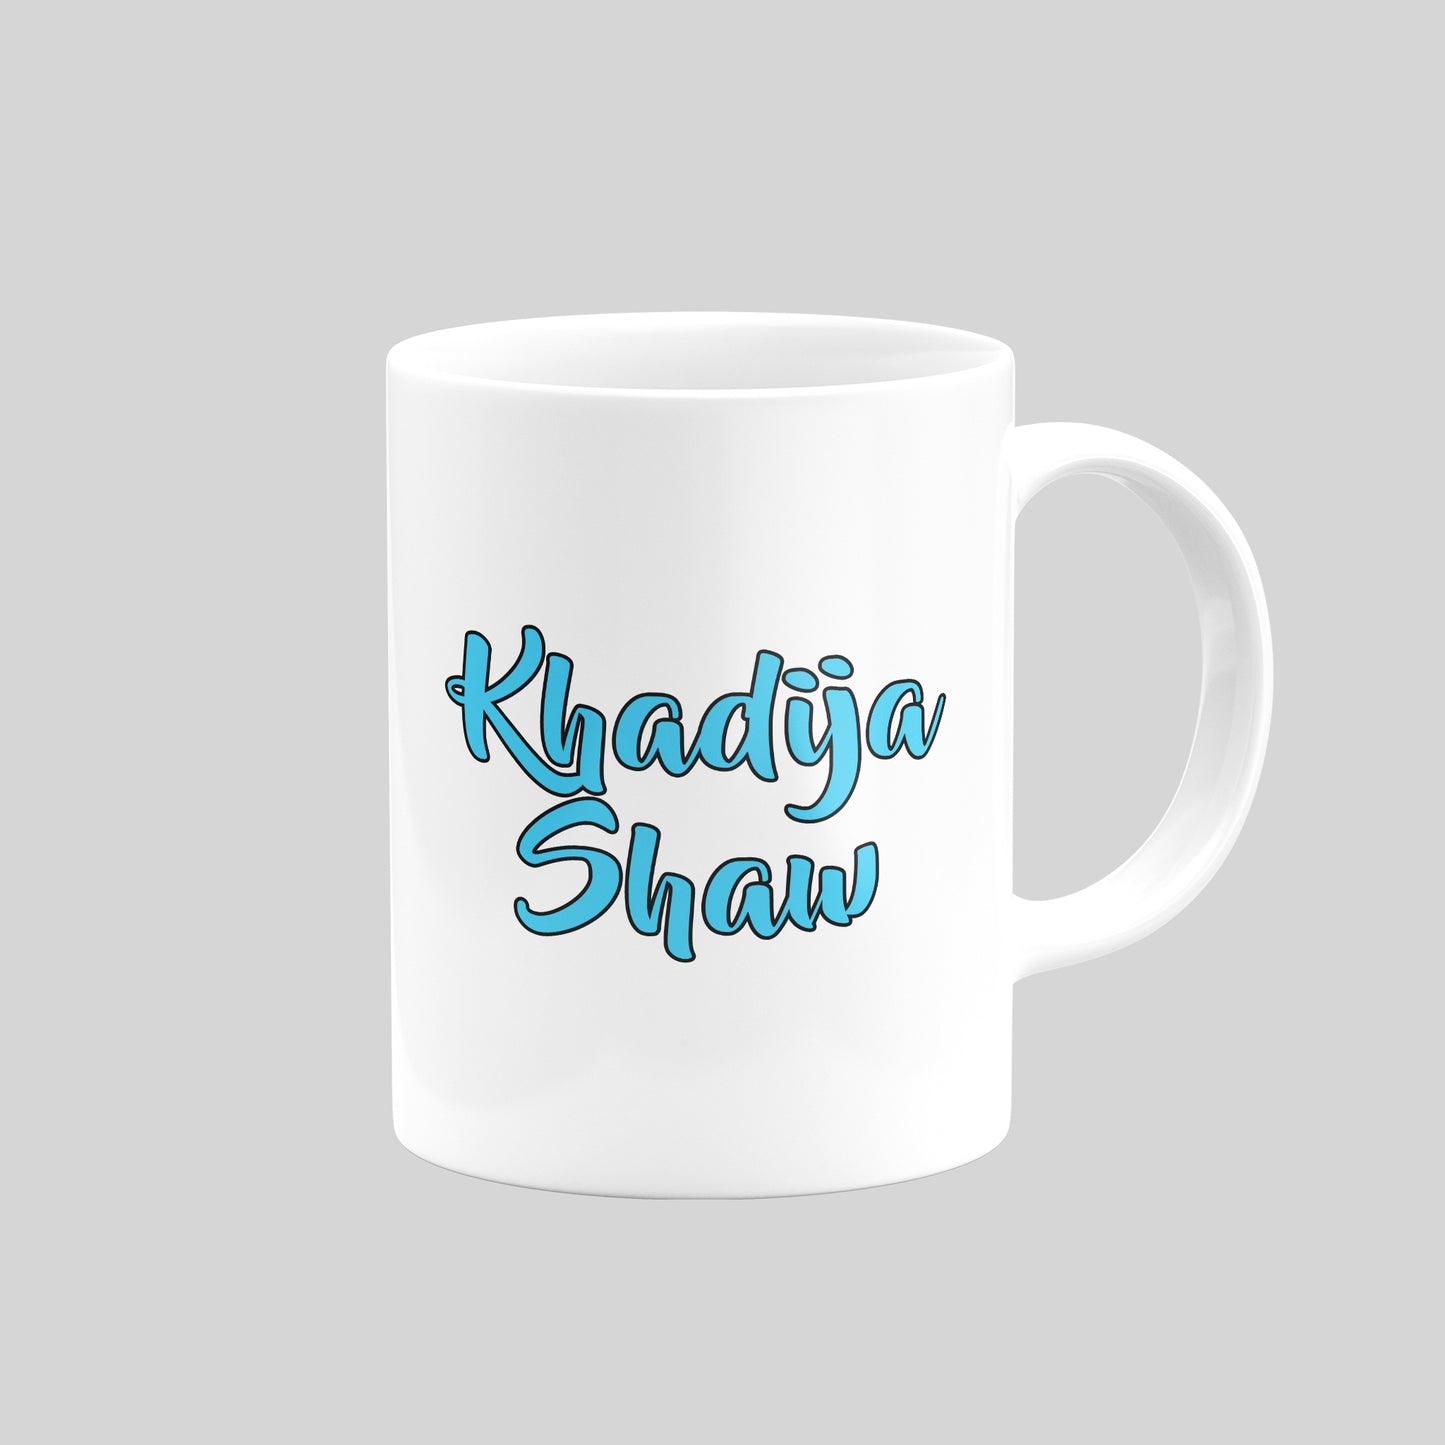 Khadija Shaw Mug